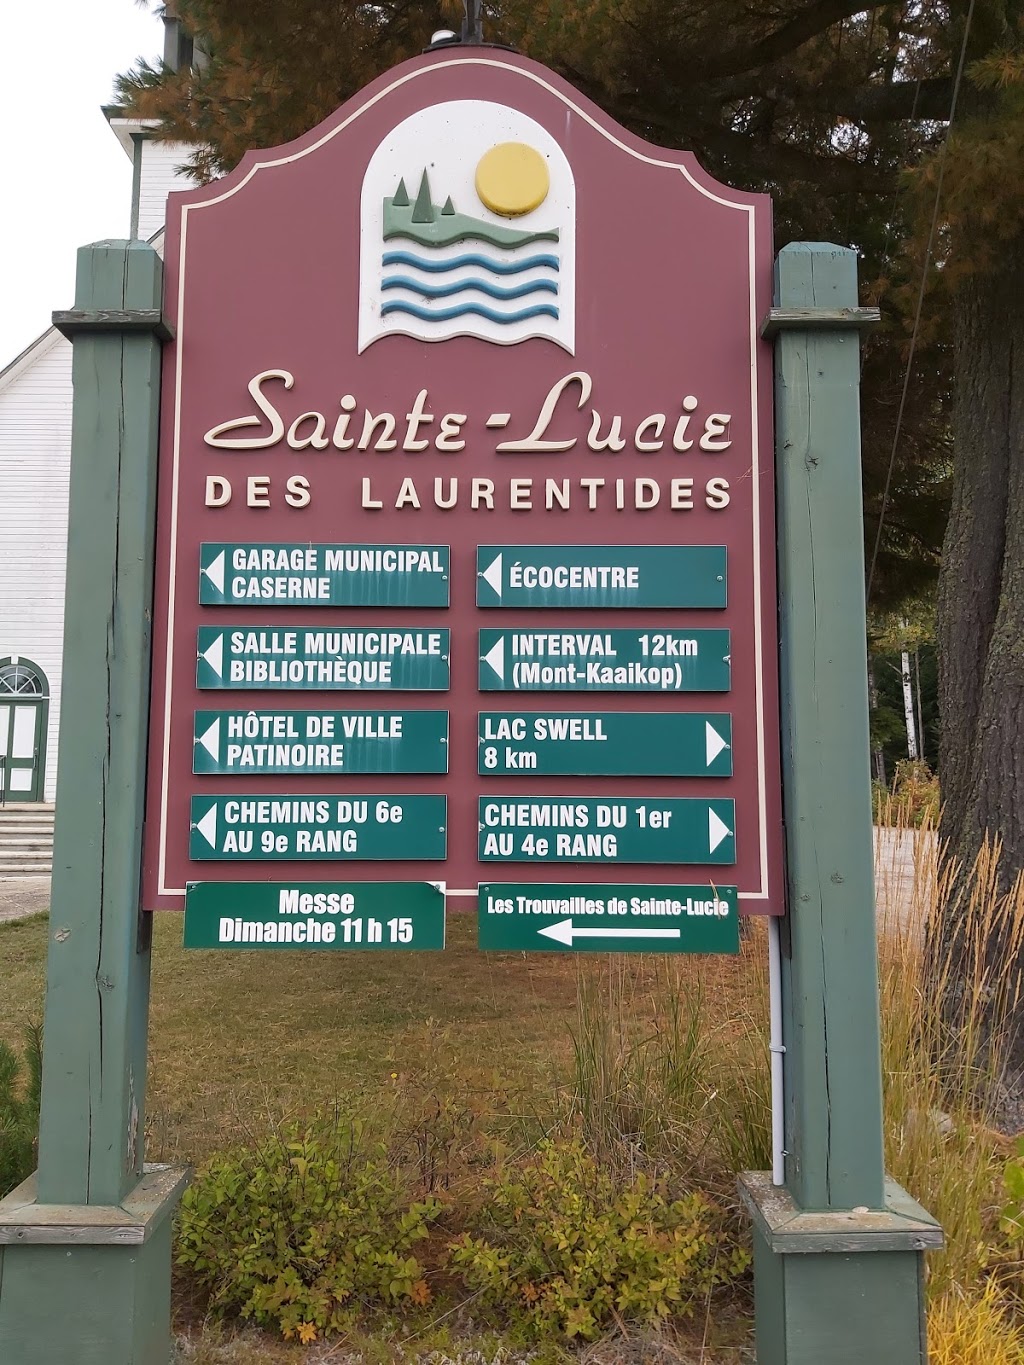 Église de Sainte-Lucie-des-Laurentides | Sainte-Lucie-des-Laurentides, Quebec, QC J0T 2J0, Canada